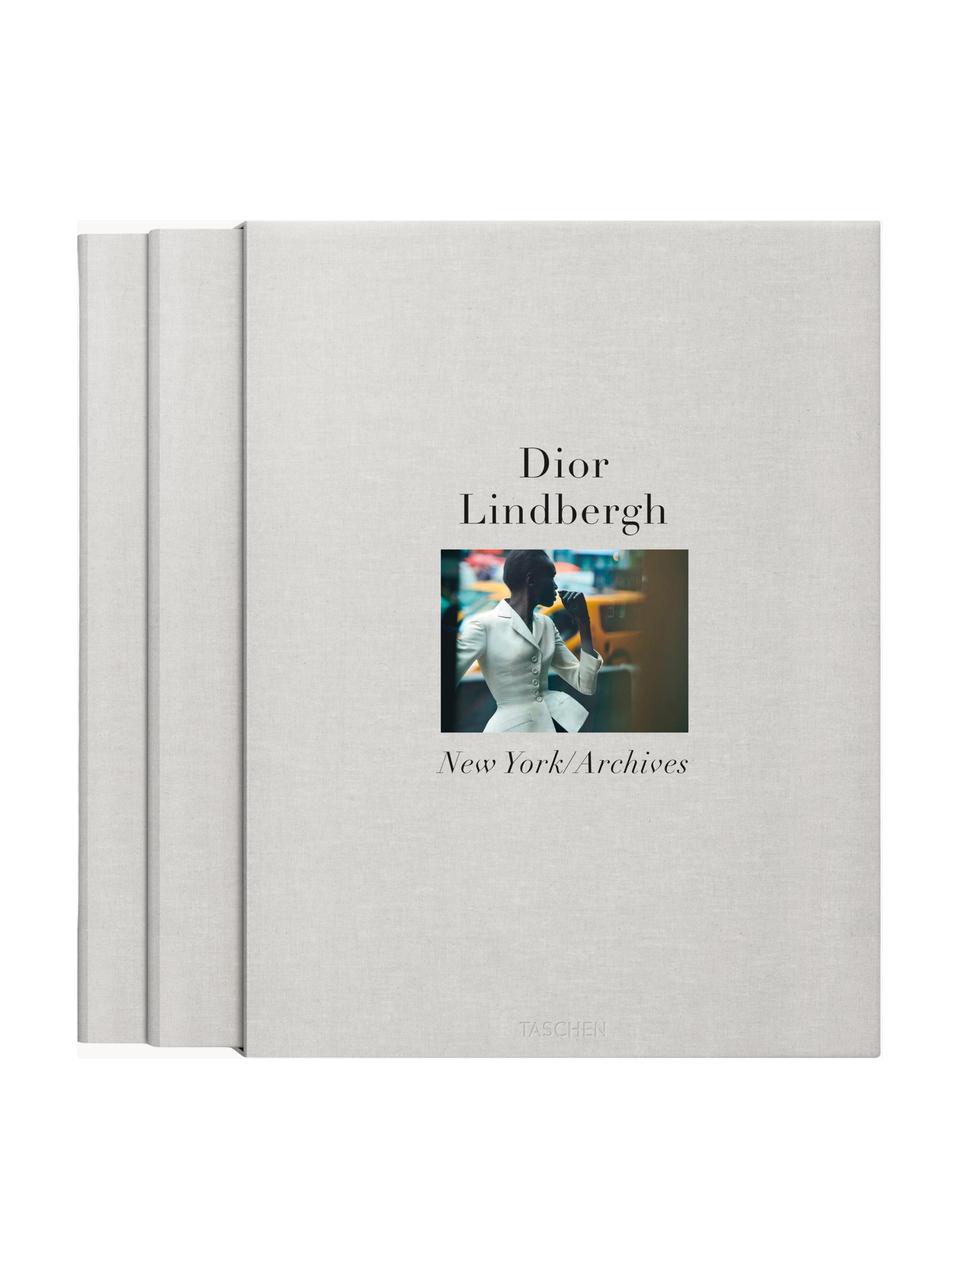 Libro ilustrado Peter Lindbergh. Dior, con funda, Papel, tapa dura, Peter Lindbergh. Dior, im Schuber, An 28 x L 37 cm